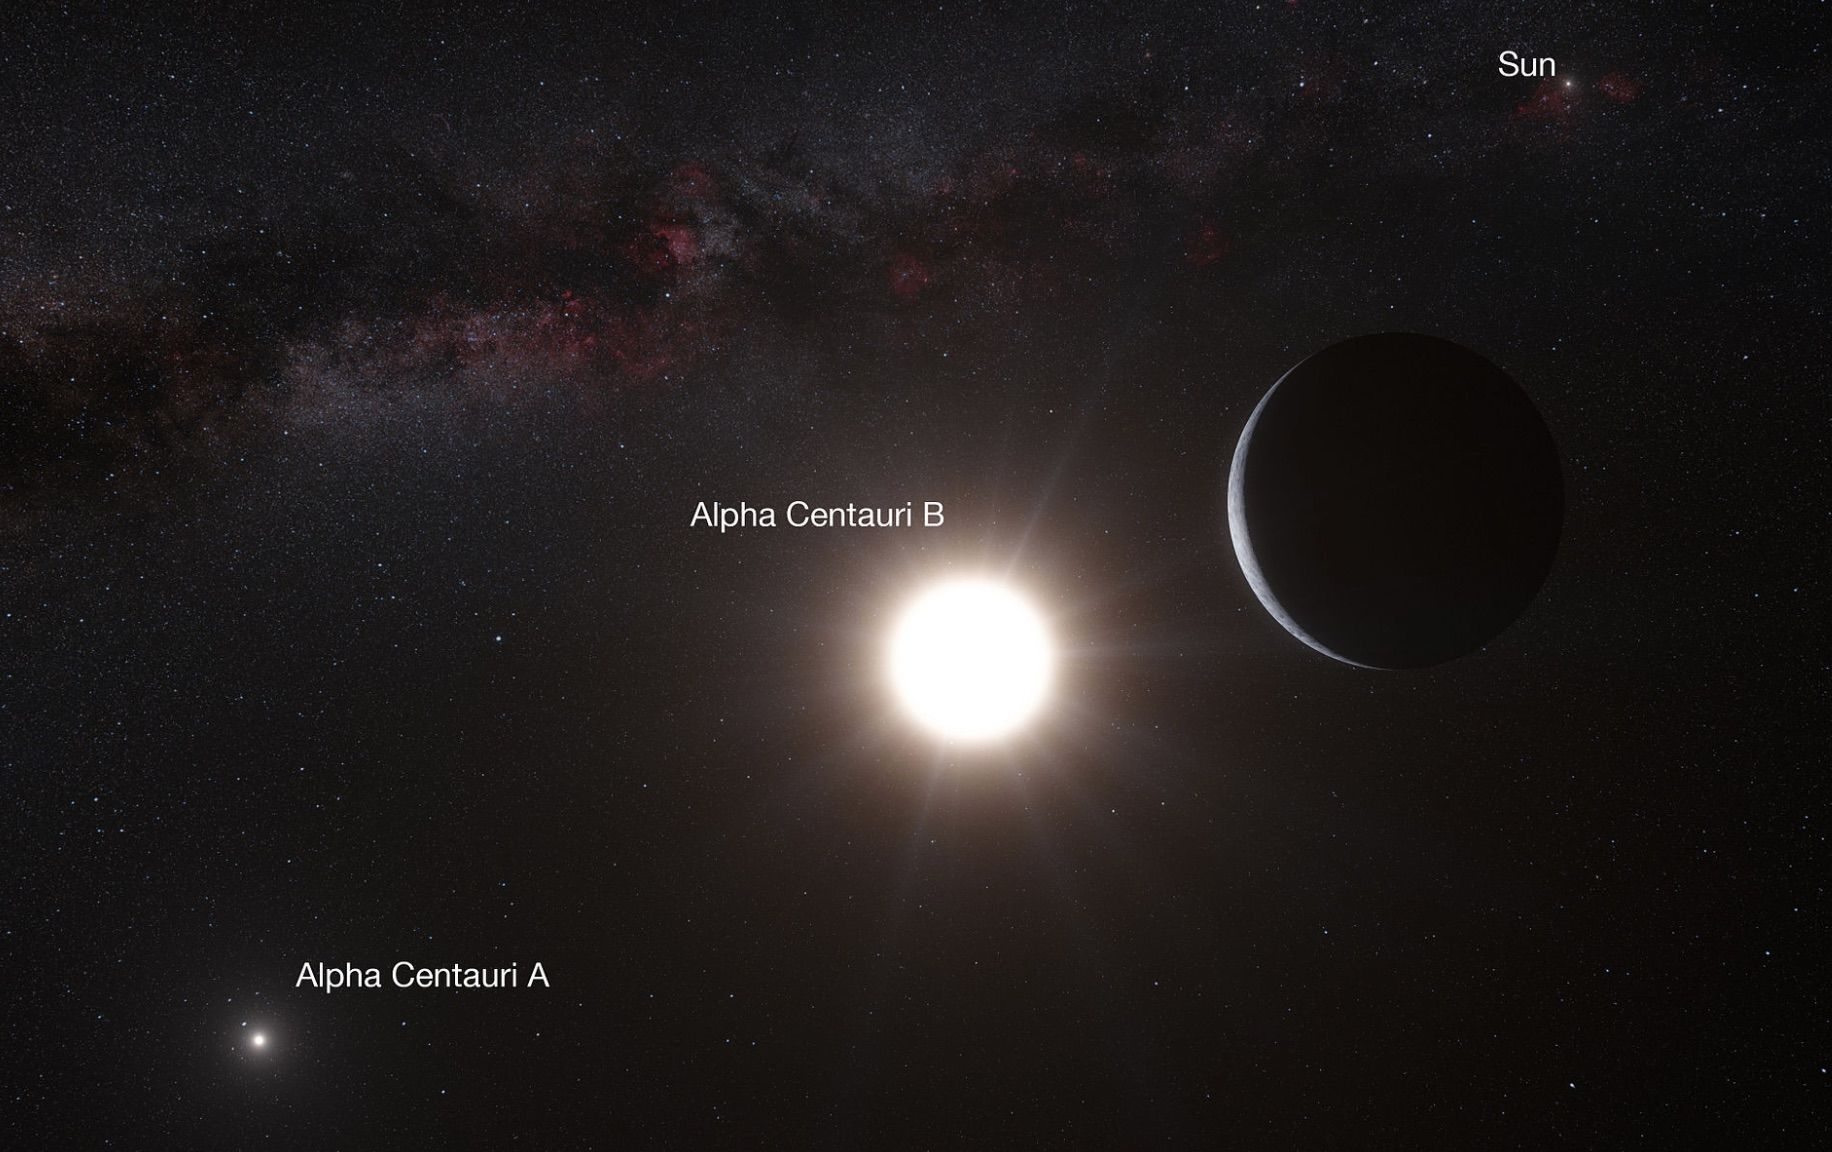 (半人马座阿尔法星系中的两颗恒星,右上角为太阳系,图片由l.